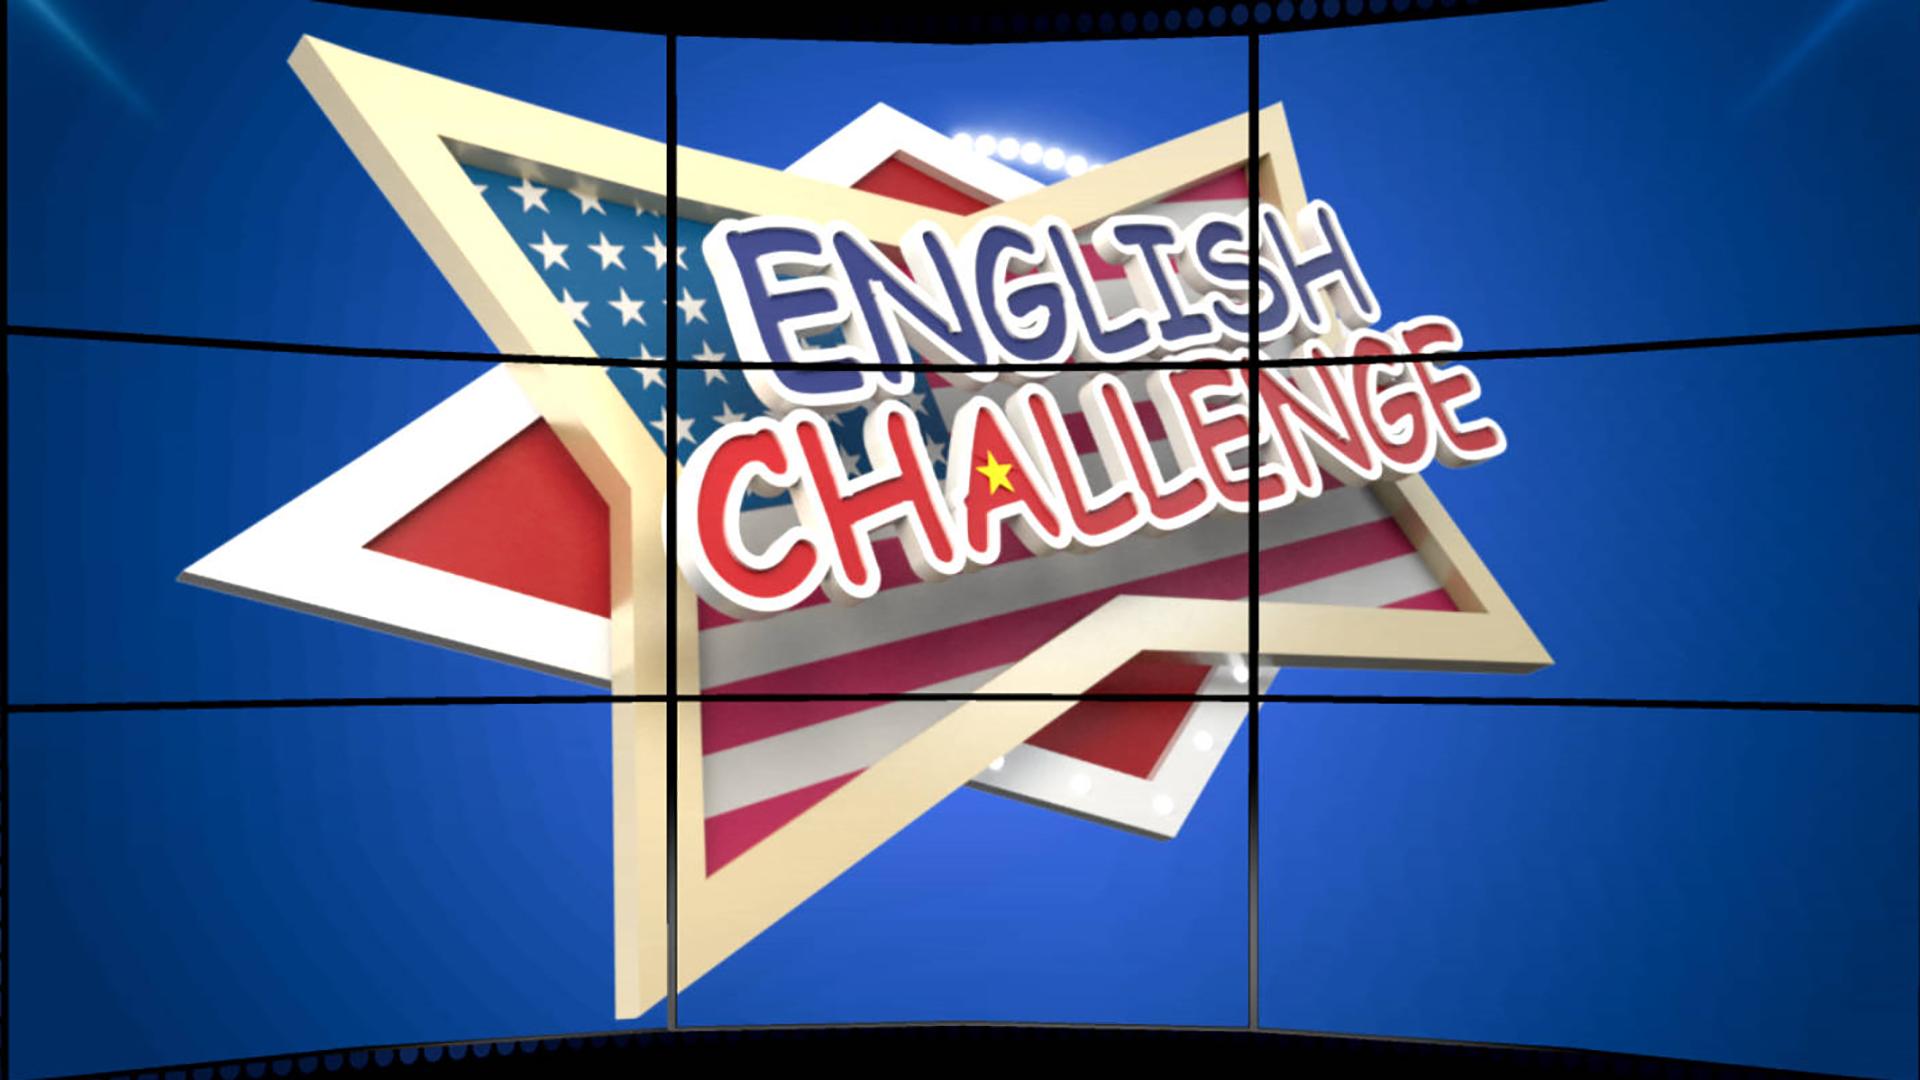 Chung kết sân chơi tiếng Anh “English Challage” mùa 3 - năm 2020